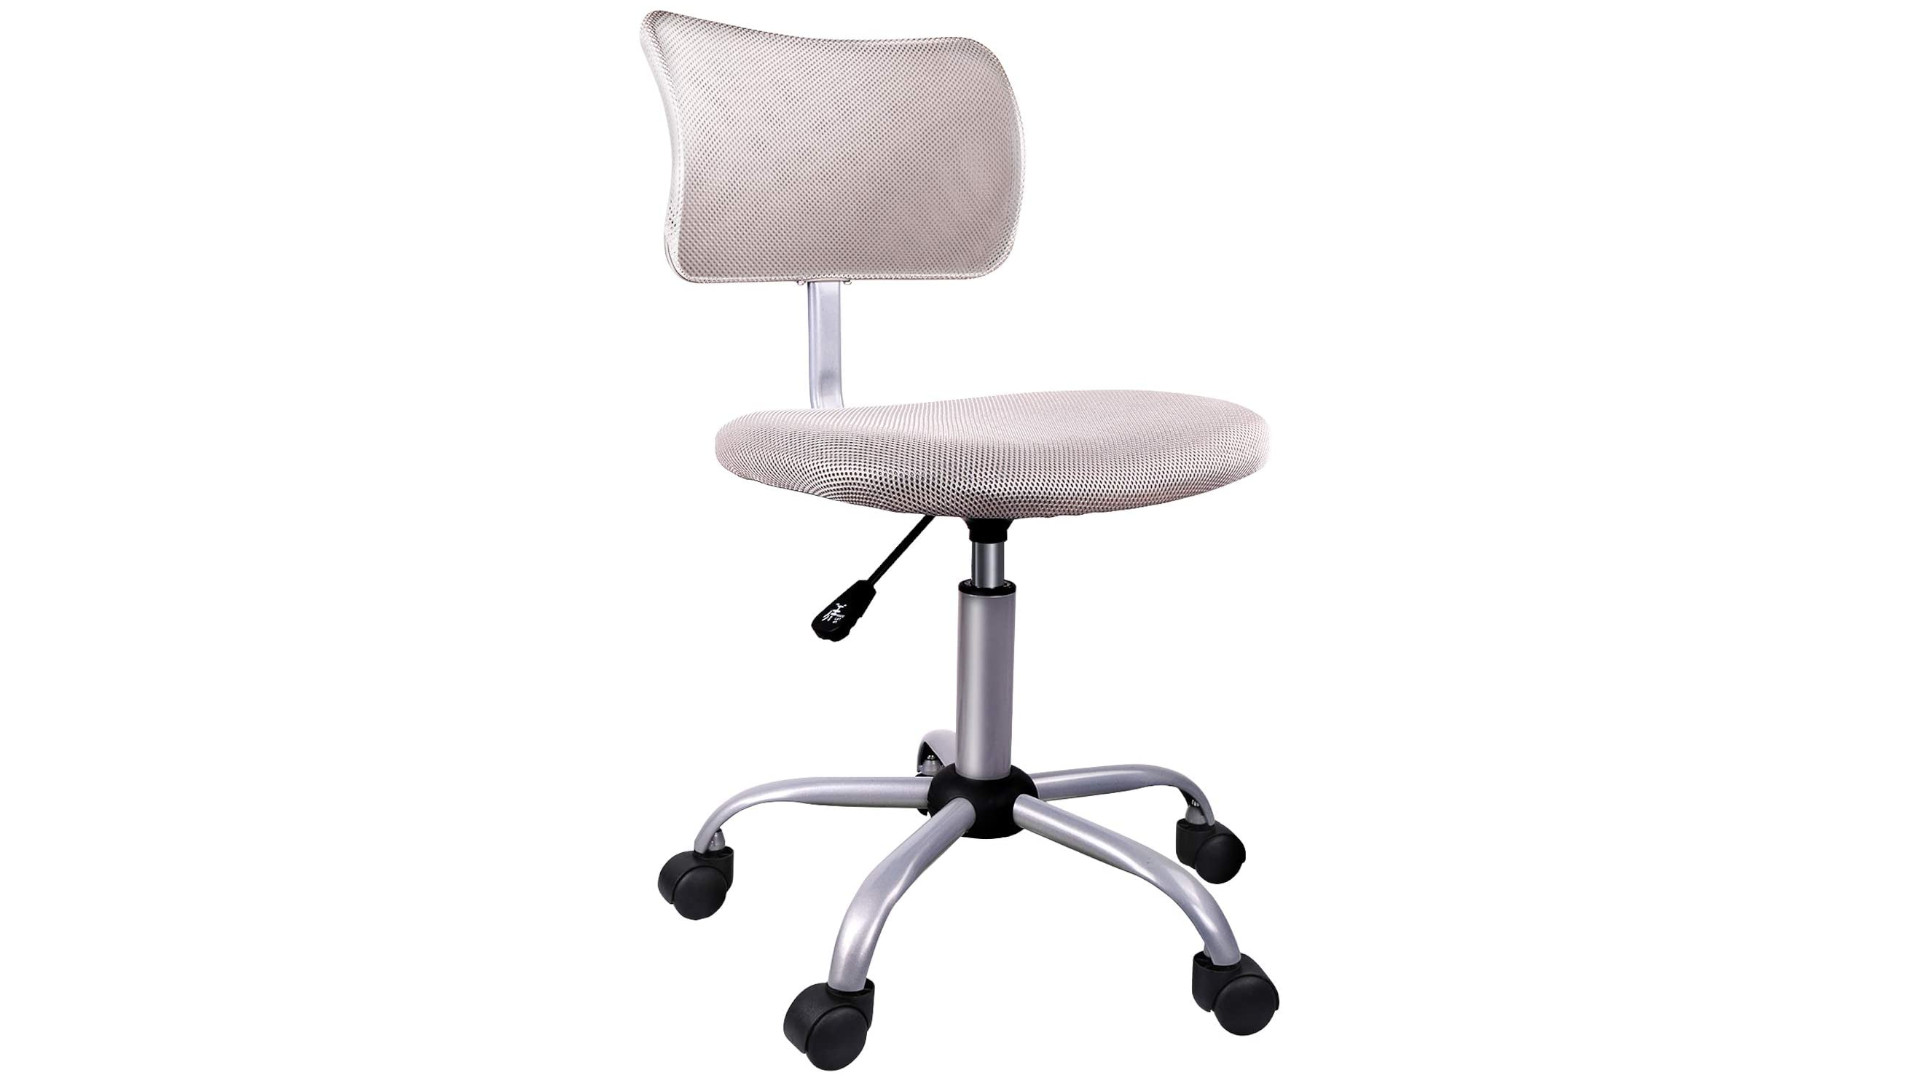 Smugdesk Armless Office Chair